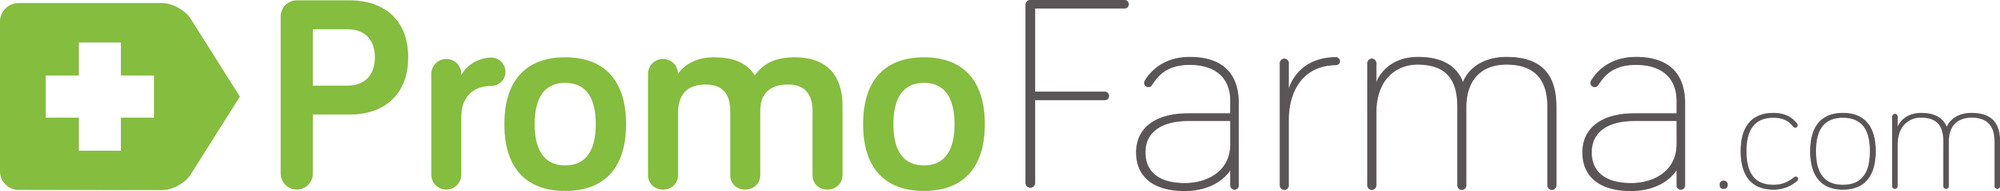 Promofarma.com Logo